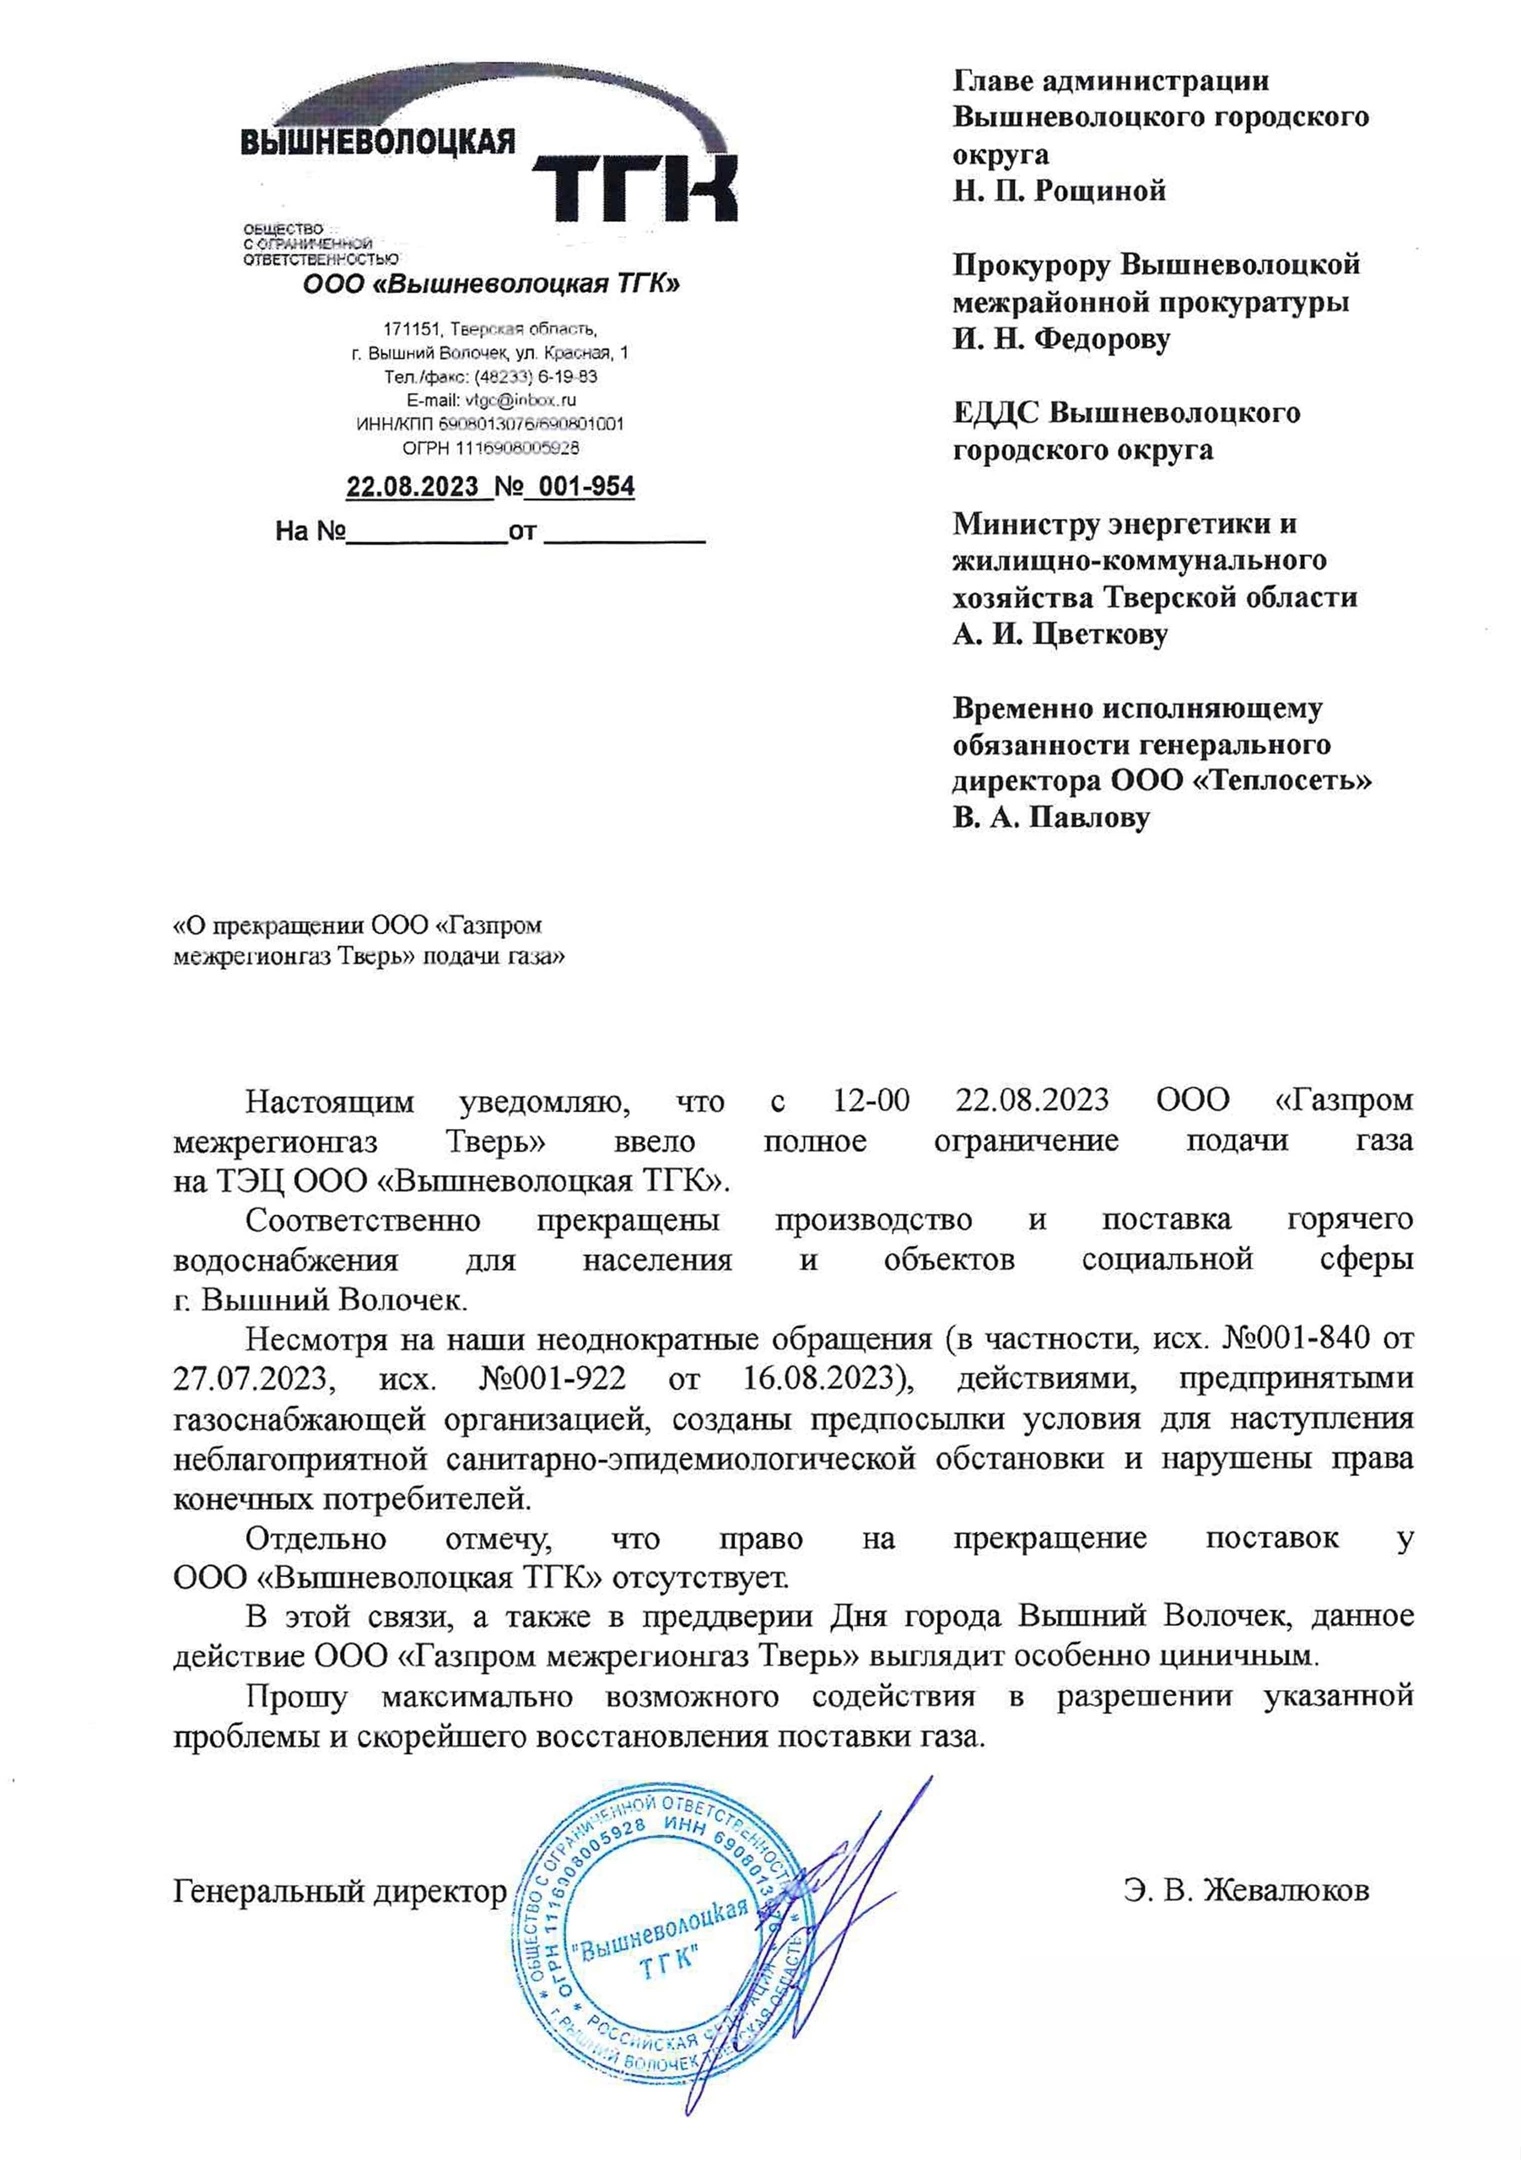 Газпром отключил газ ТЭЦ Вышний Волочек